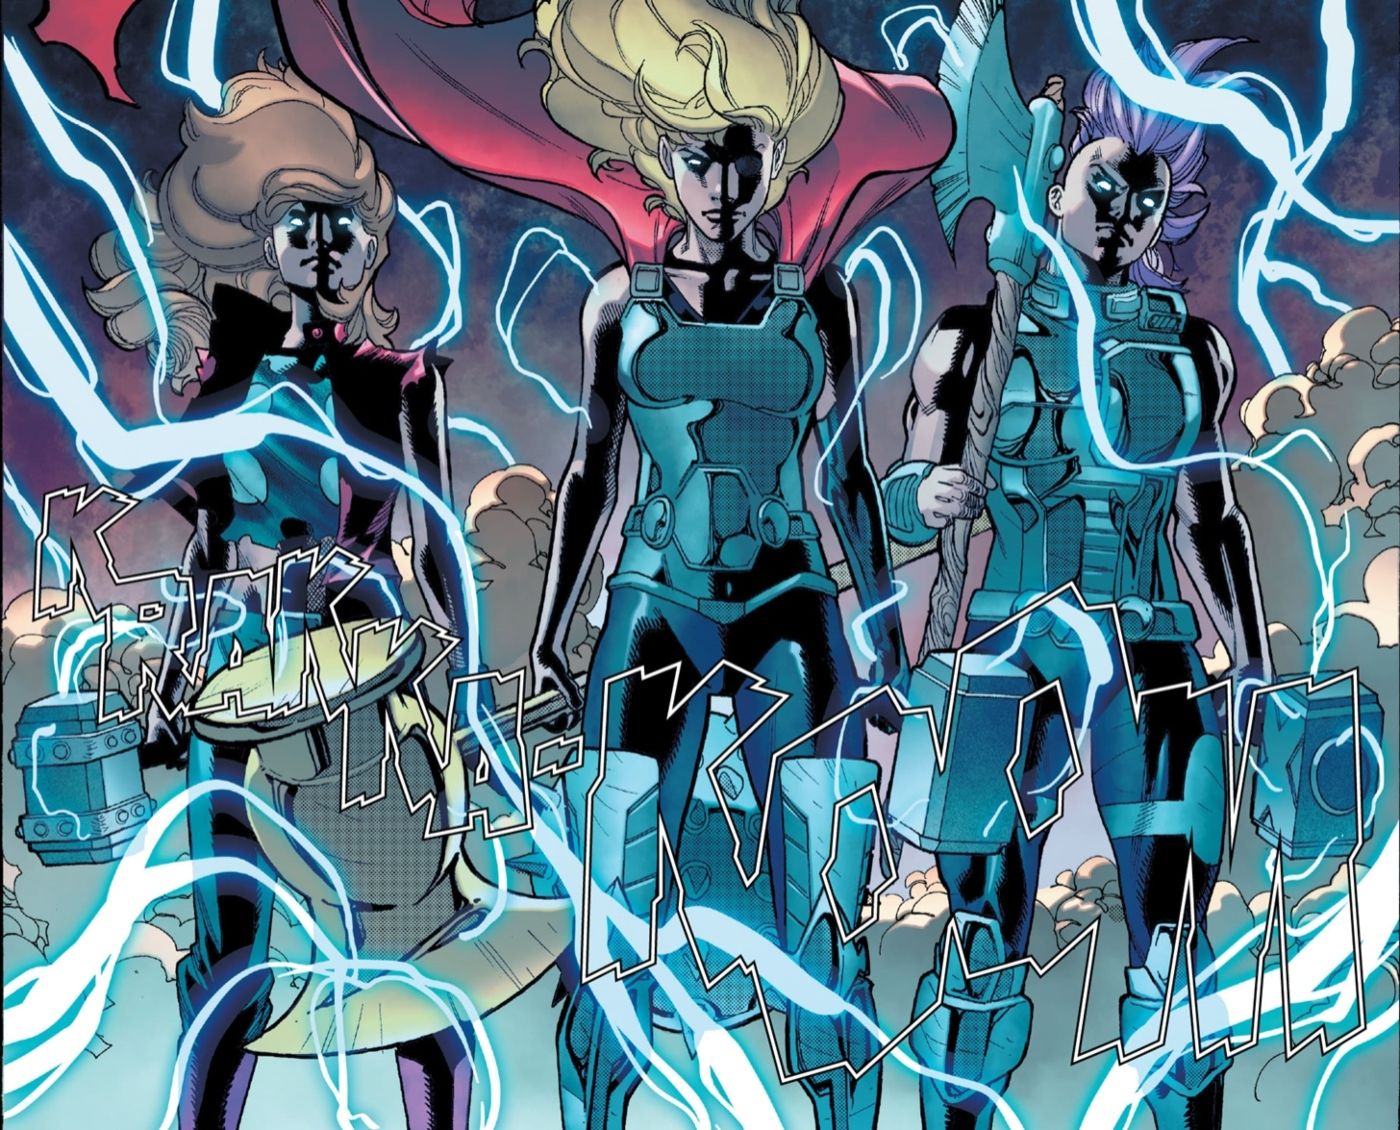 Avengers' Goddesses of Thunder worthy of Mjolnir.